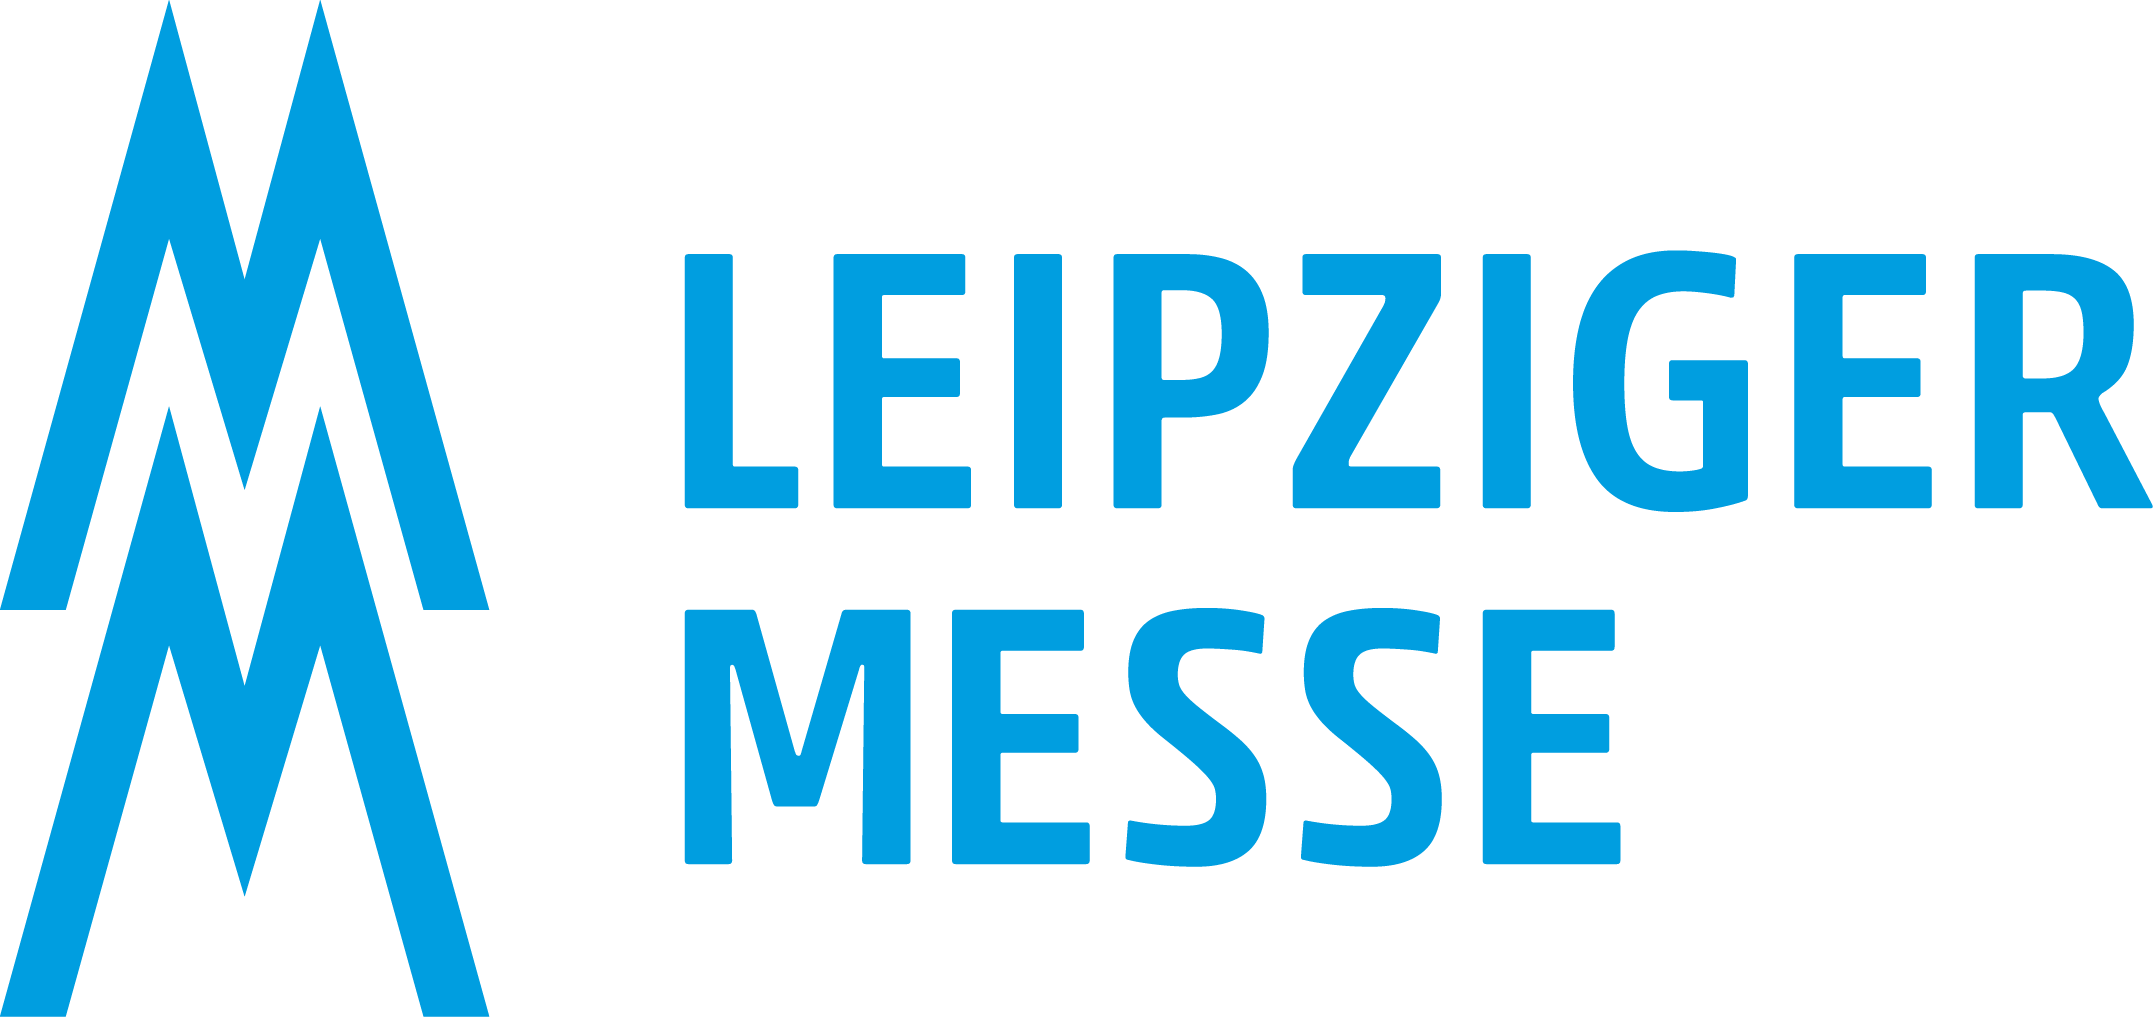 Logo der Leipziger Messe: Doppel-M mit Text Leipziger Messe